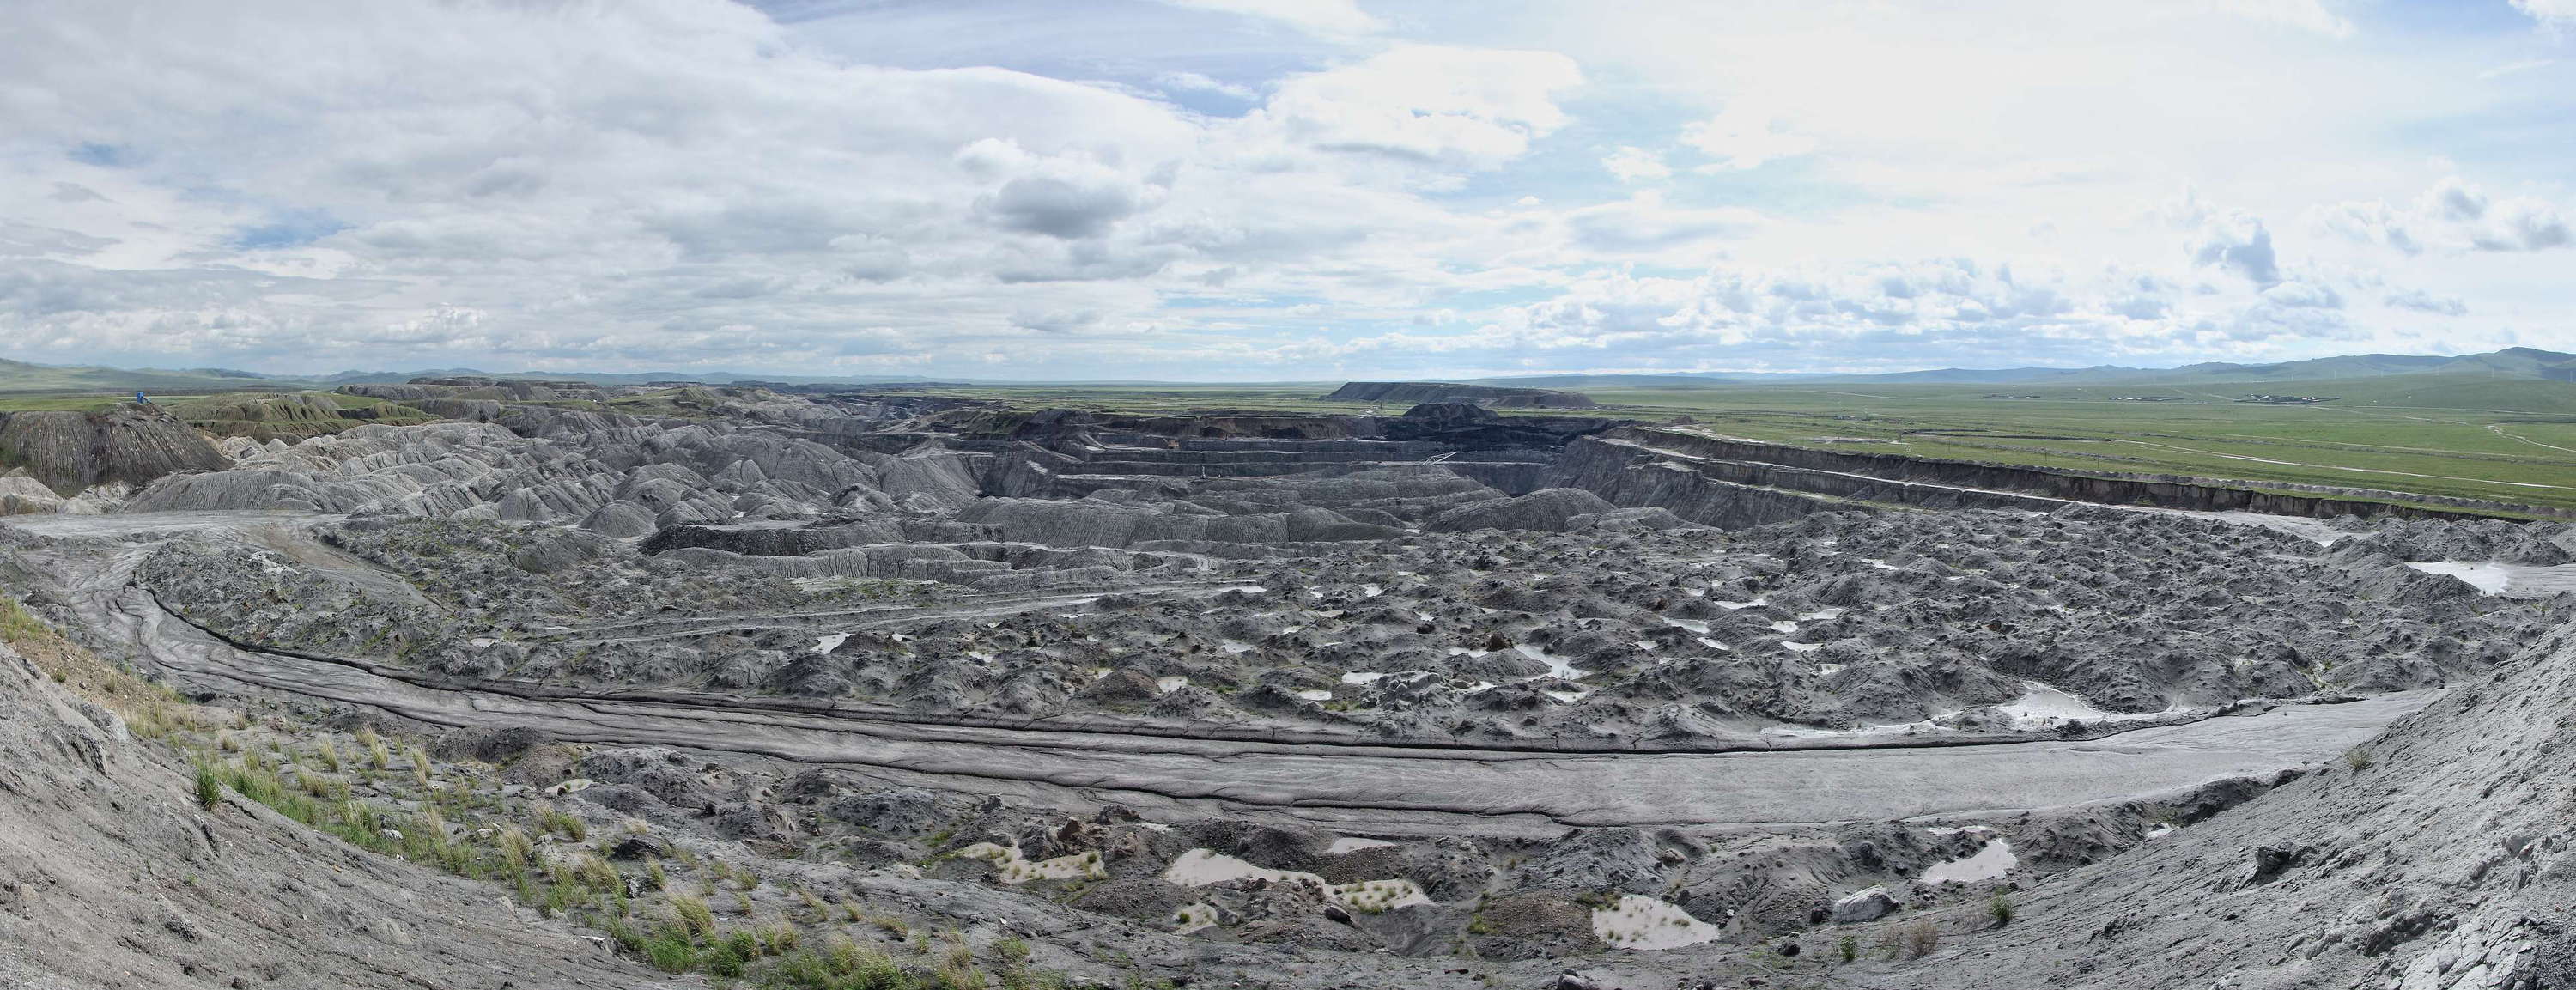 Baganuur  |  Panorama of brown coal mine